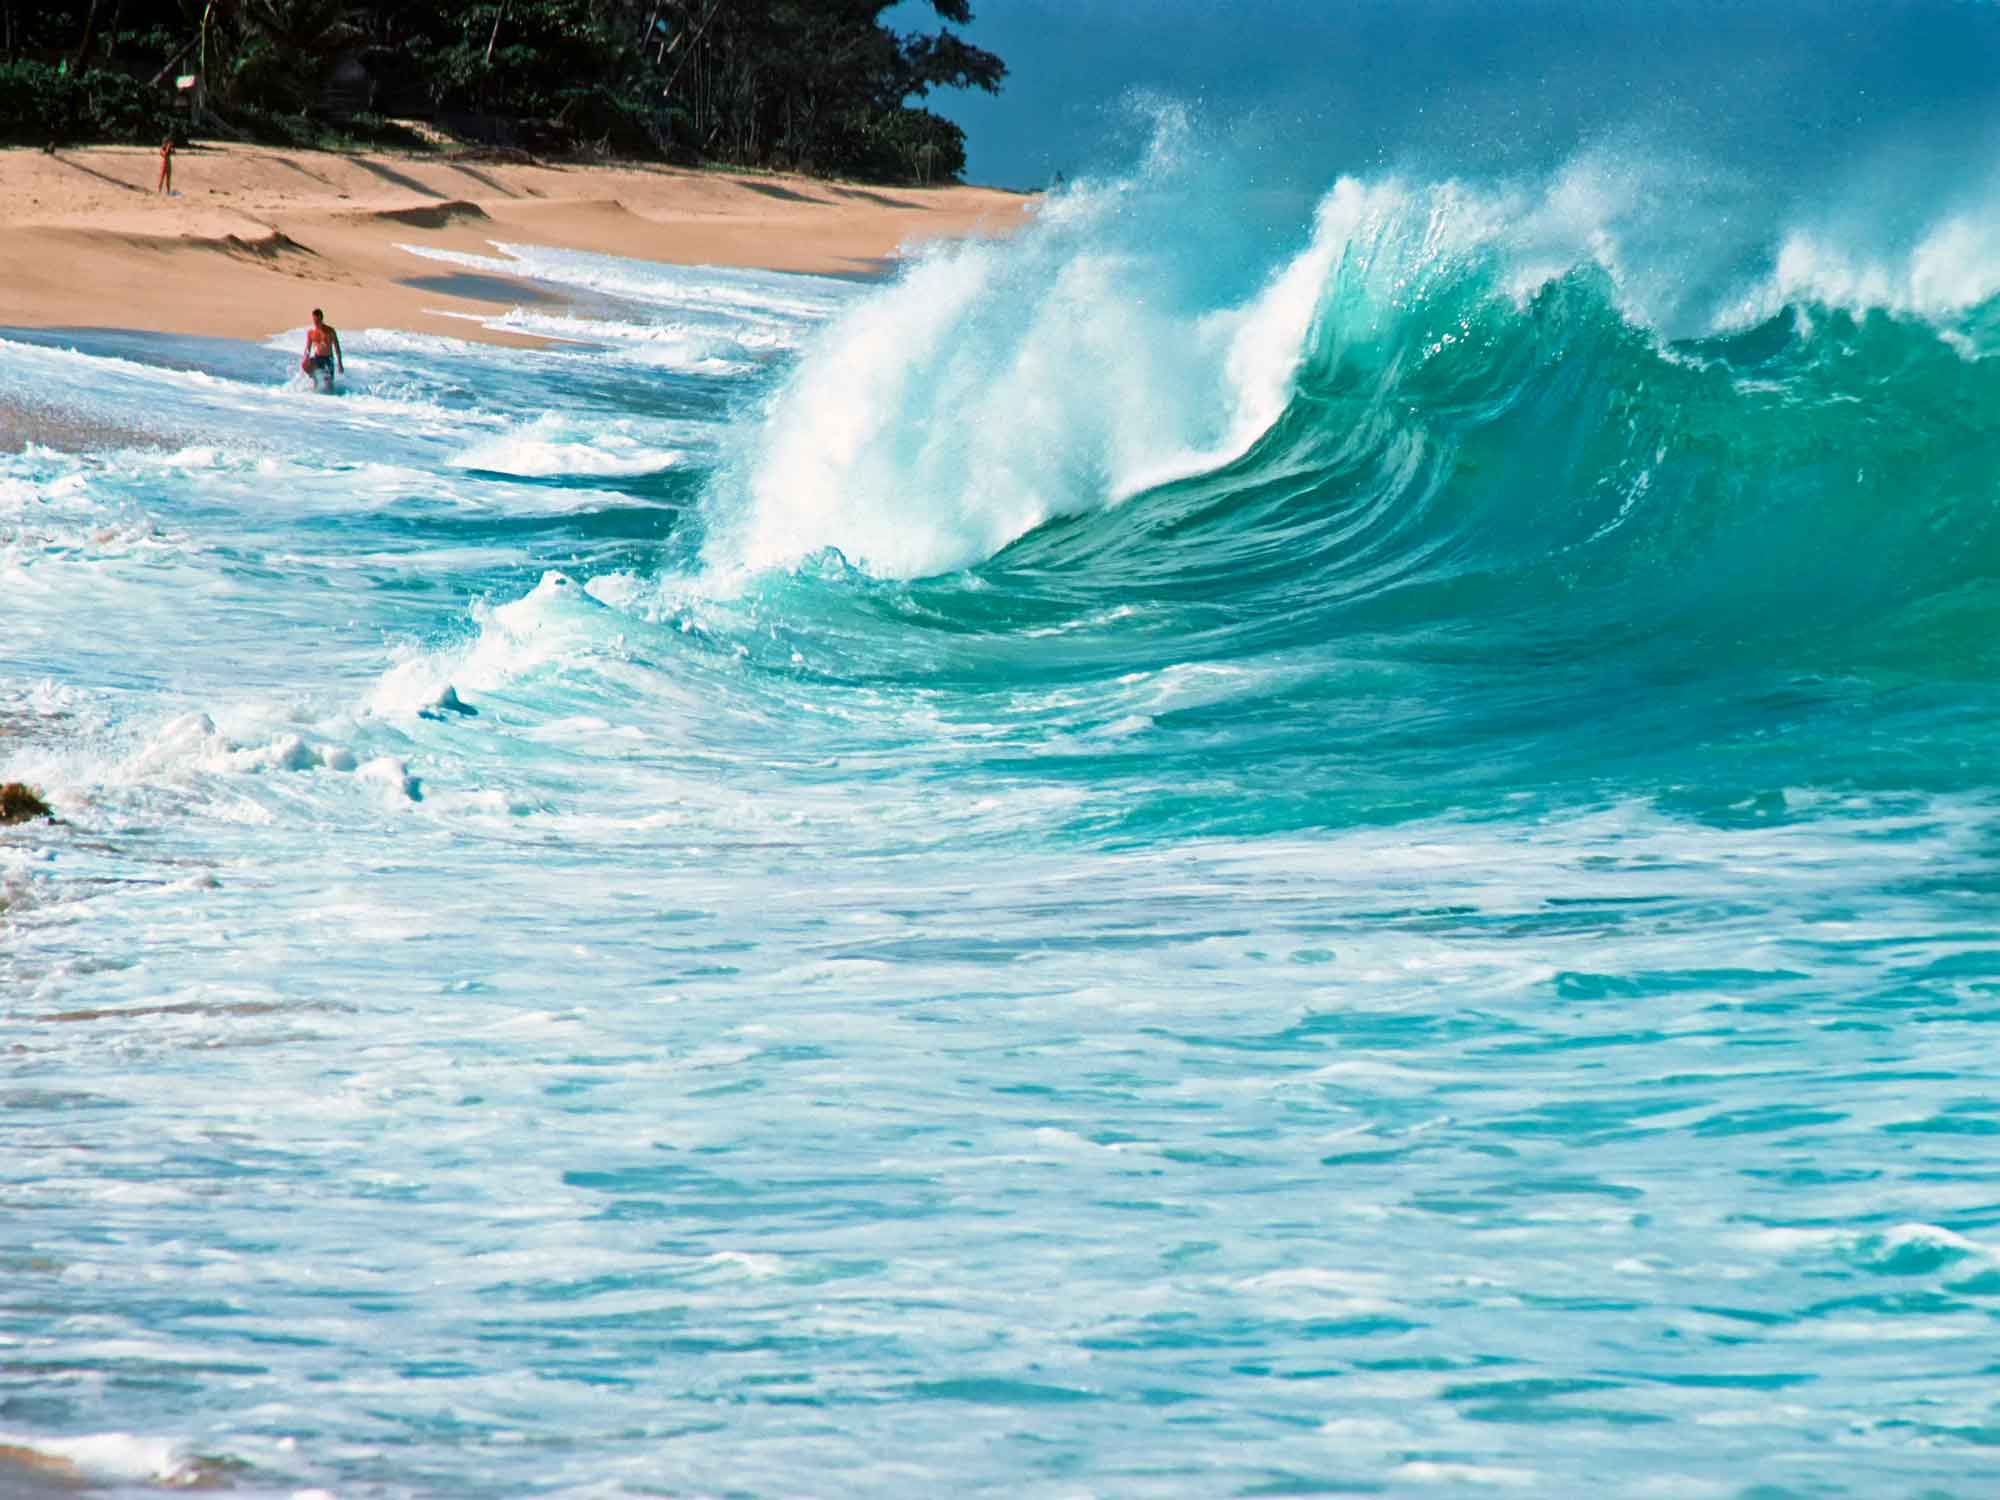 Sunset Beach Hawaii Travel Guide